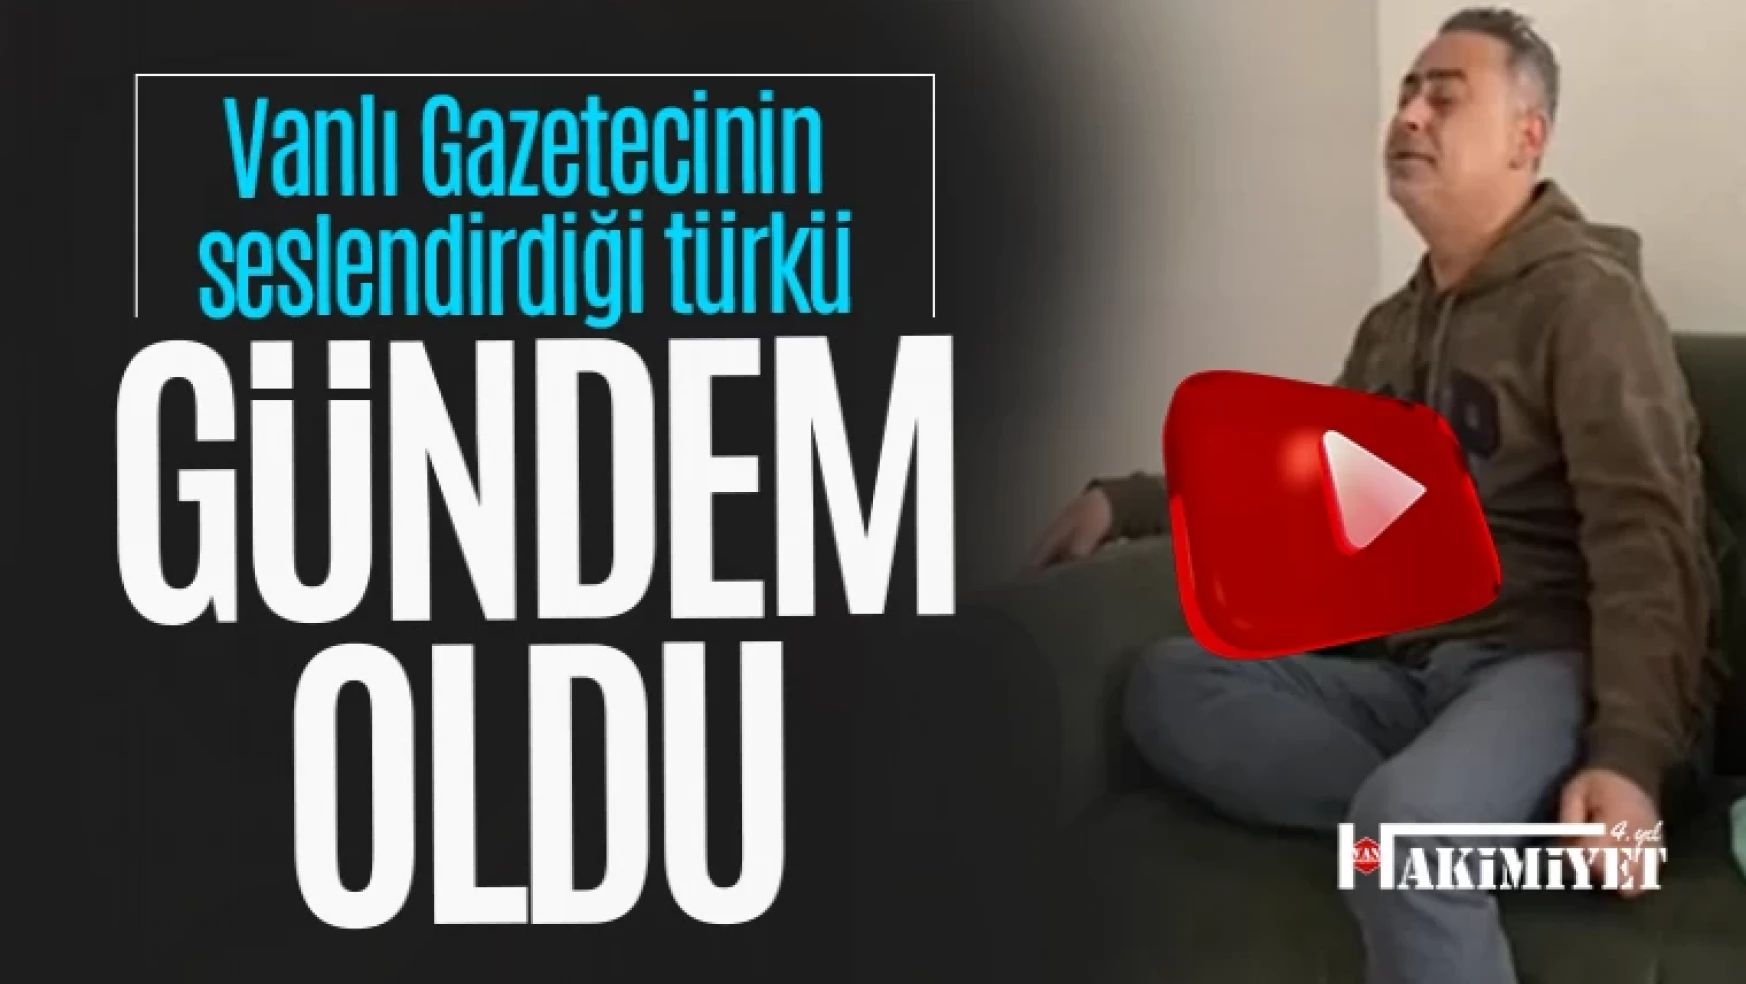 Vanlı Gazeteci Faruk Akgeyik'in türkü performansı gündem oldu